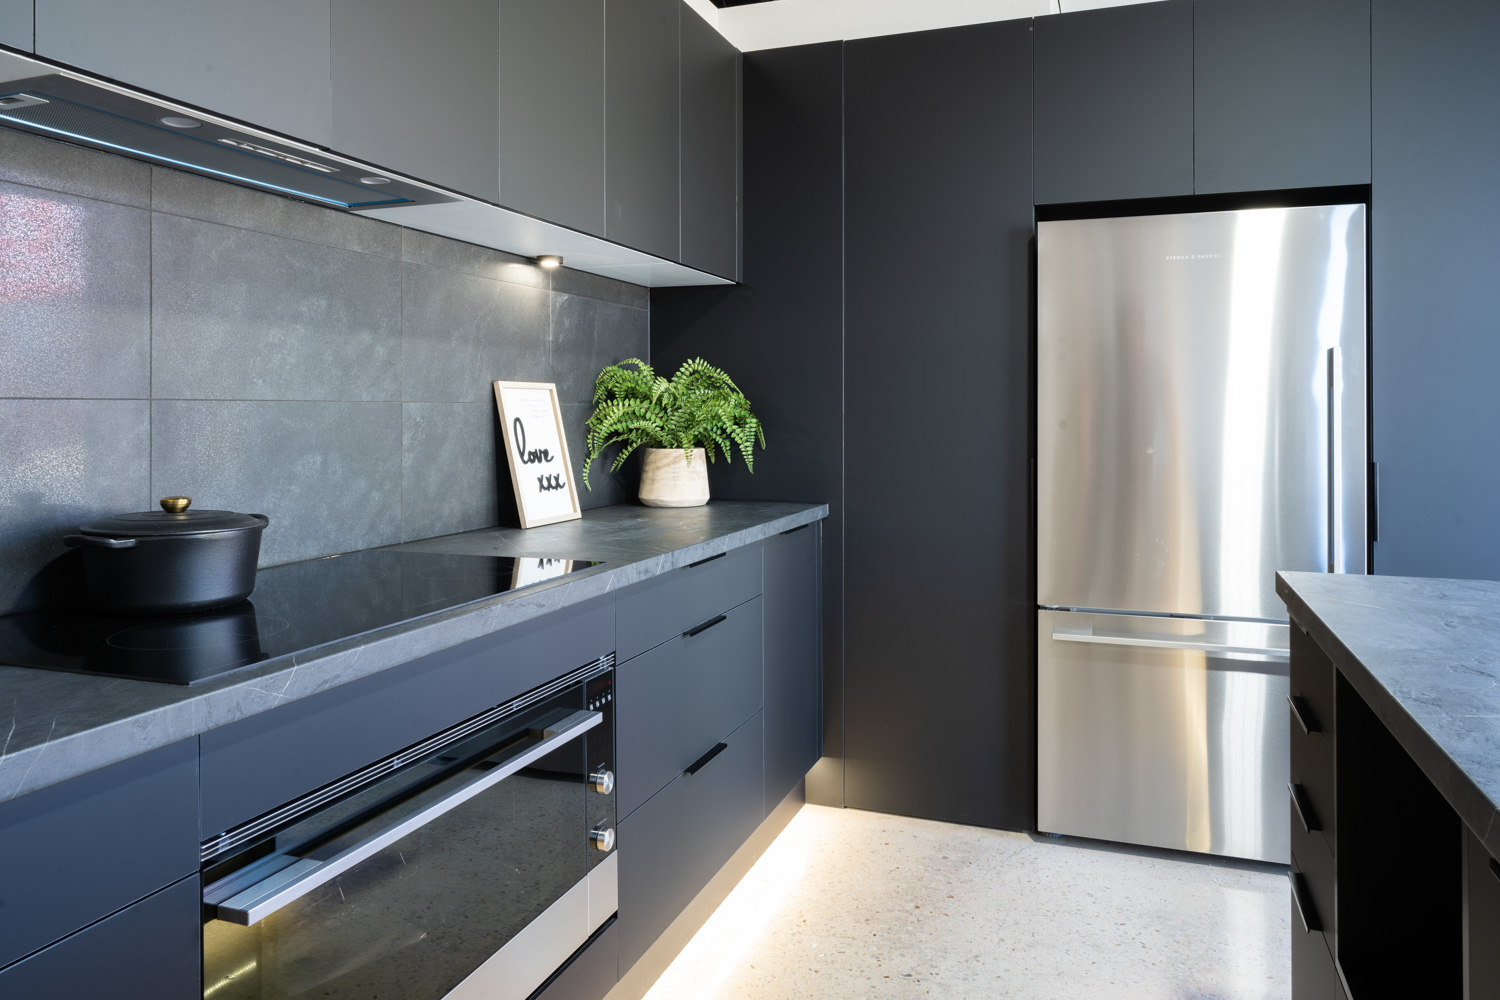 Black Touch kitchen with a dark veined laminate benchtop. Fisher & Paykel bottom mount fridge